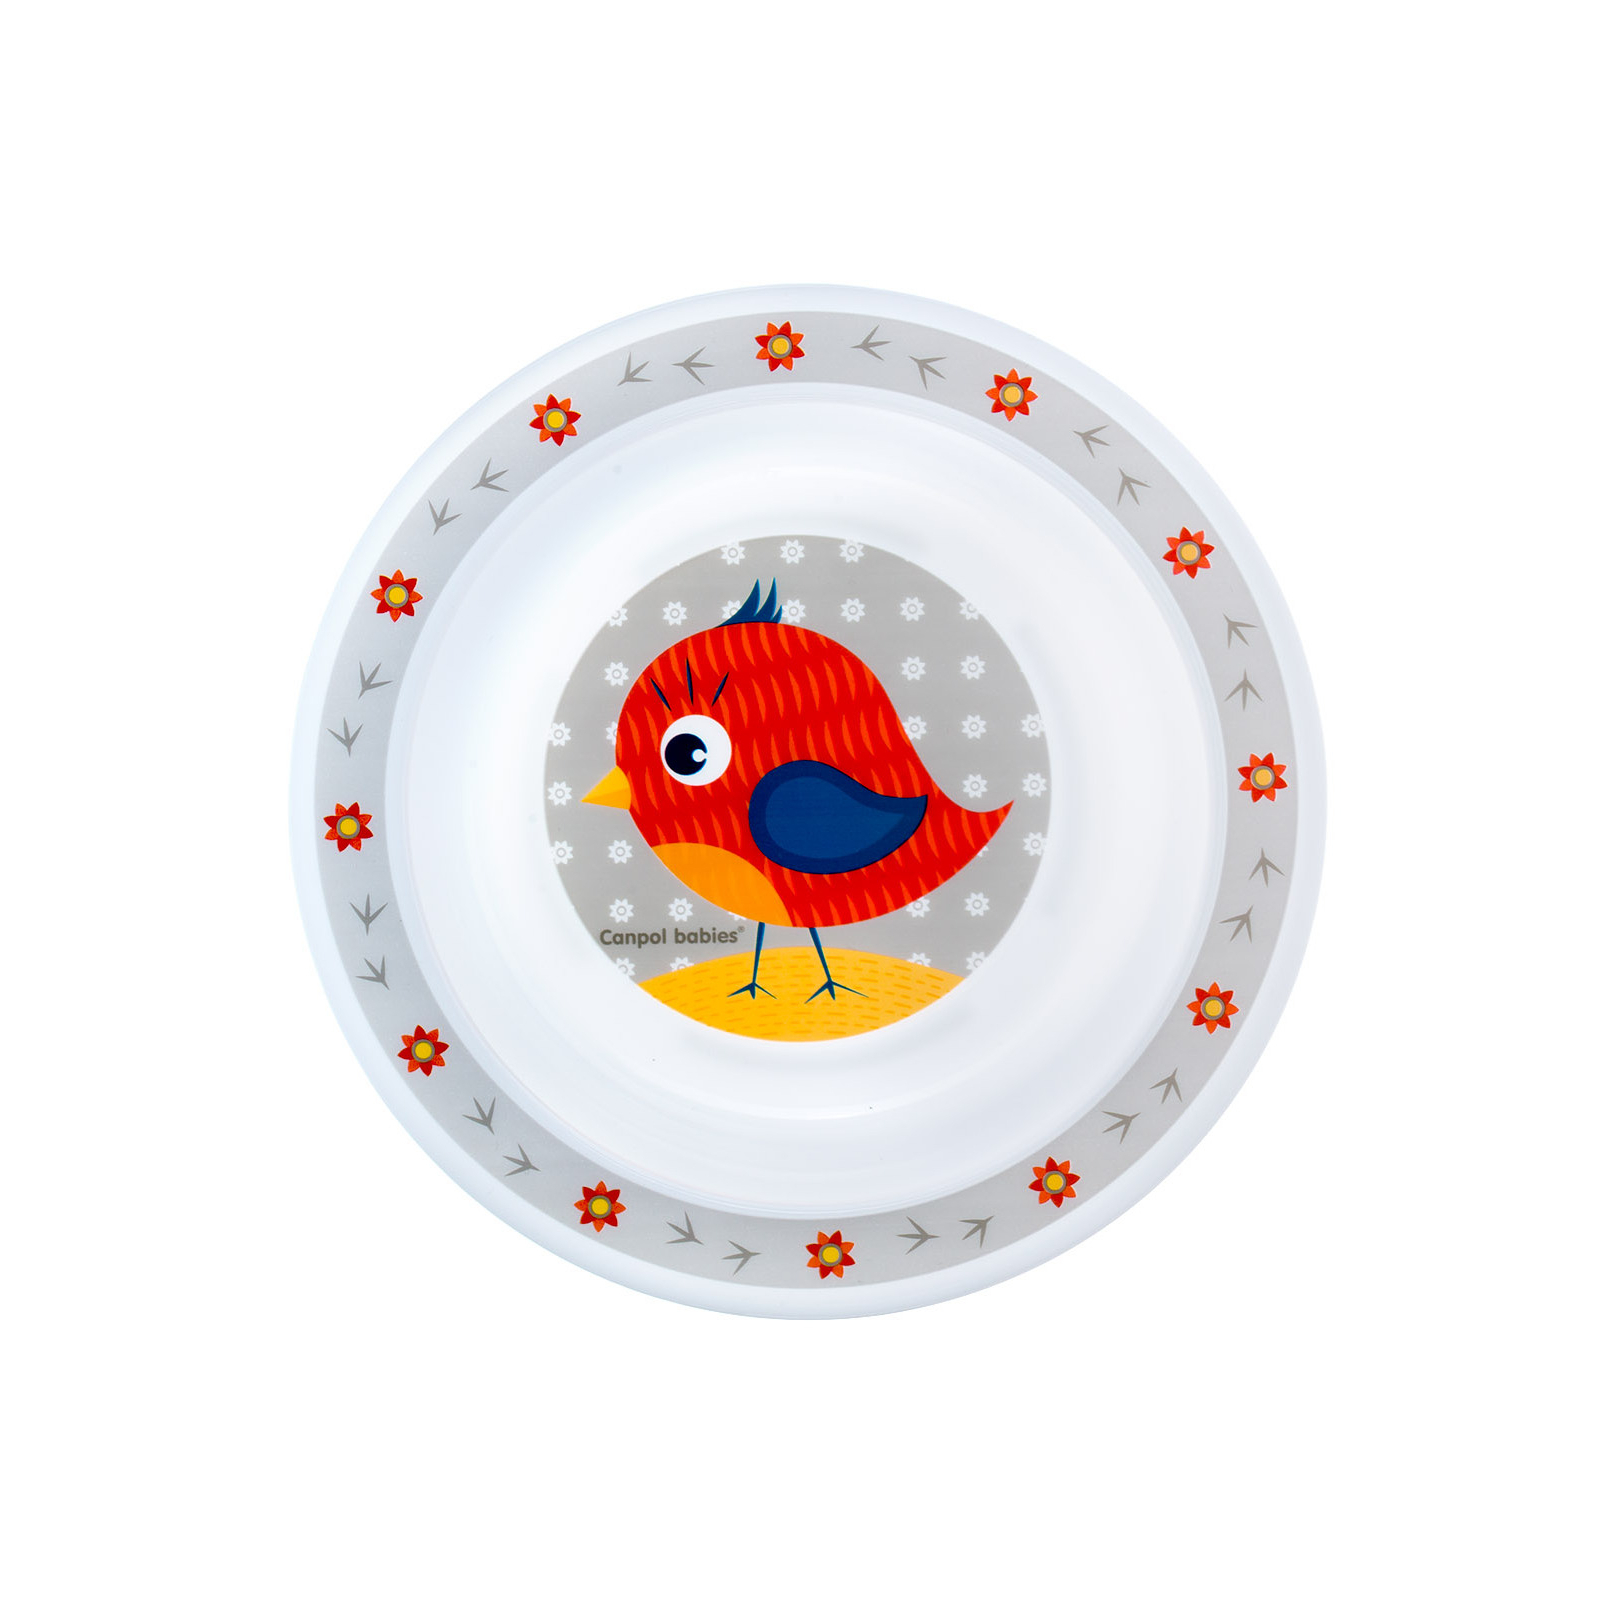 Набор детской посуды Canpol babies Cute Animals Птичка Красный 5 предметов (4/401_red) изображение 6